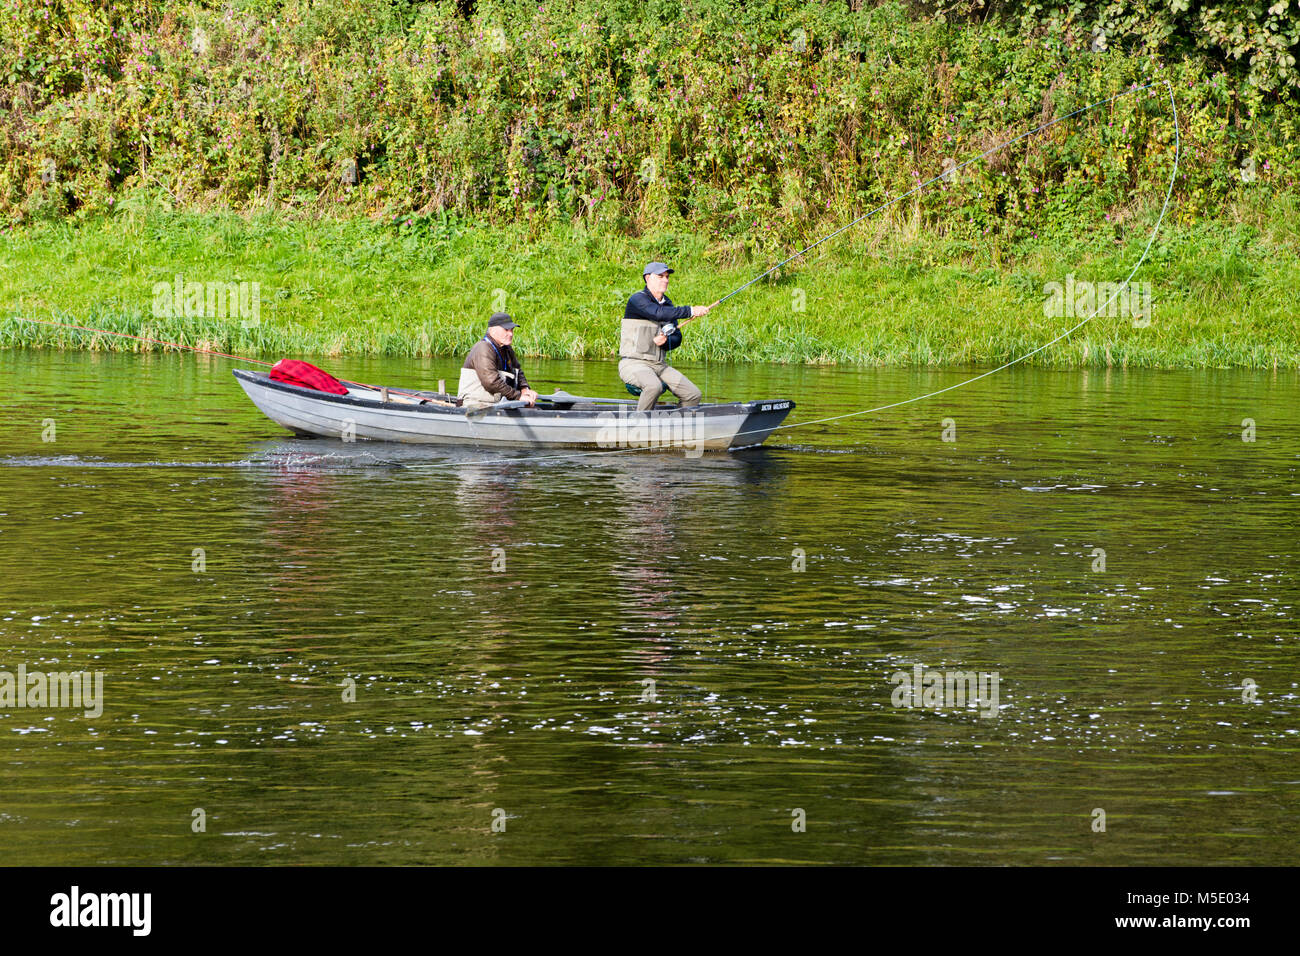 La pêche du saumon, de la jonction extérieure, où la rivière Teviot répond à la rivière Tweed, à Kelso dans les Scottish Borders. Banque D'Images